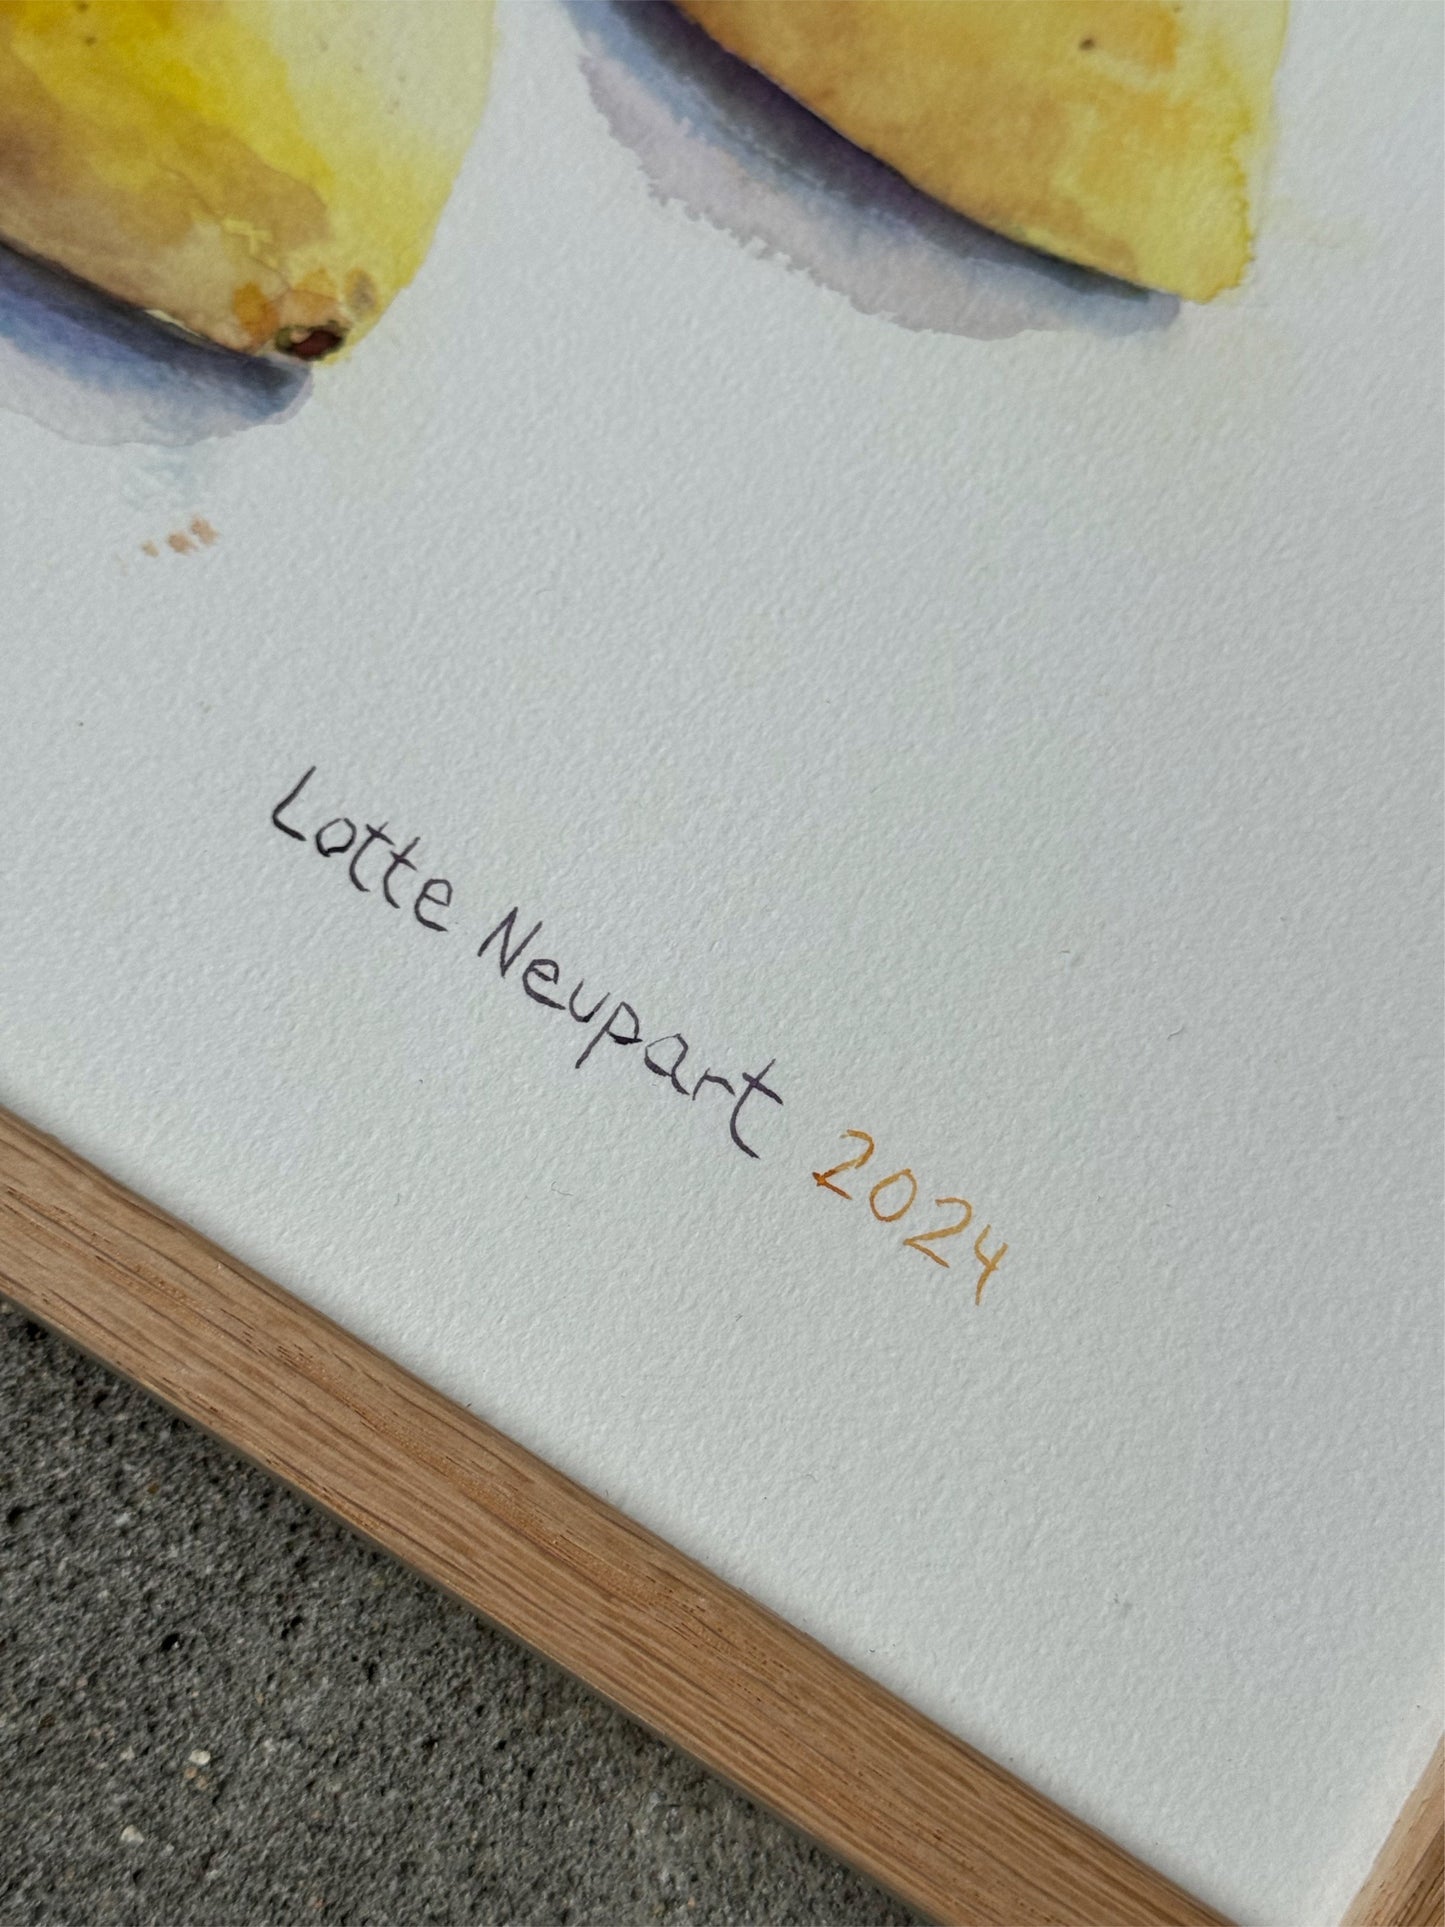 Citroner - Lotte Neupart